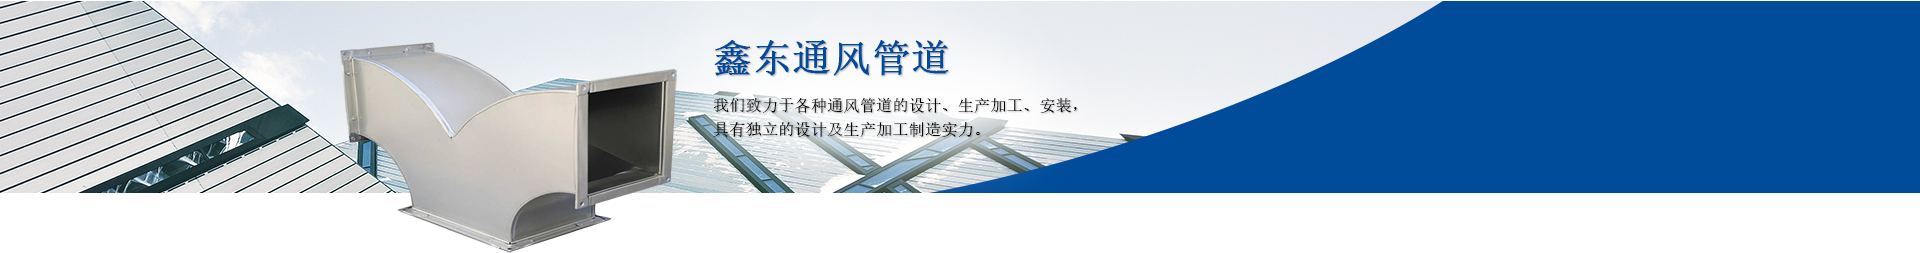 重庆鑫东通风管道有限公司致力于各种通风管道工程及风管加工